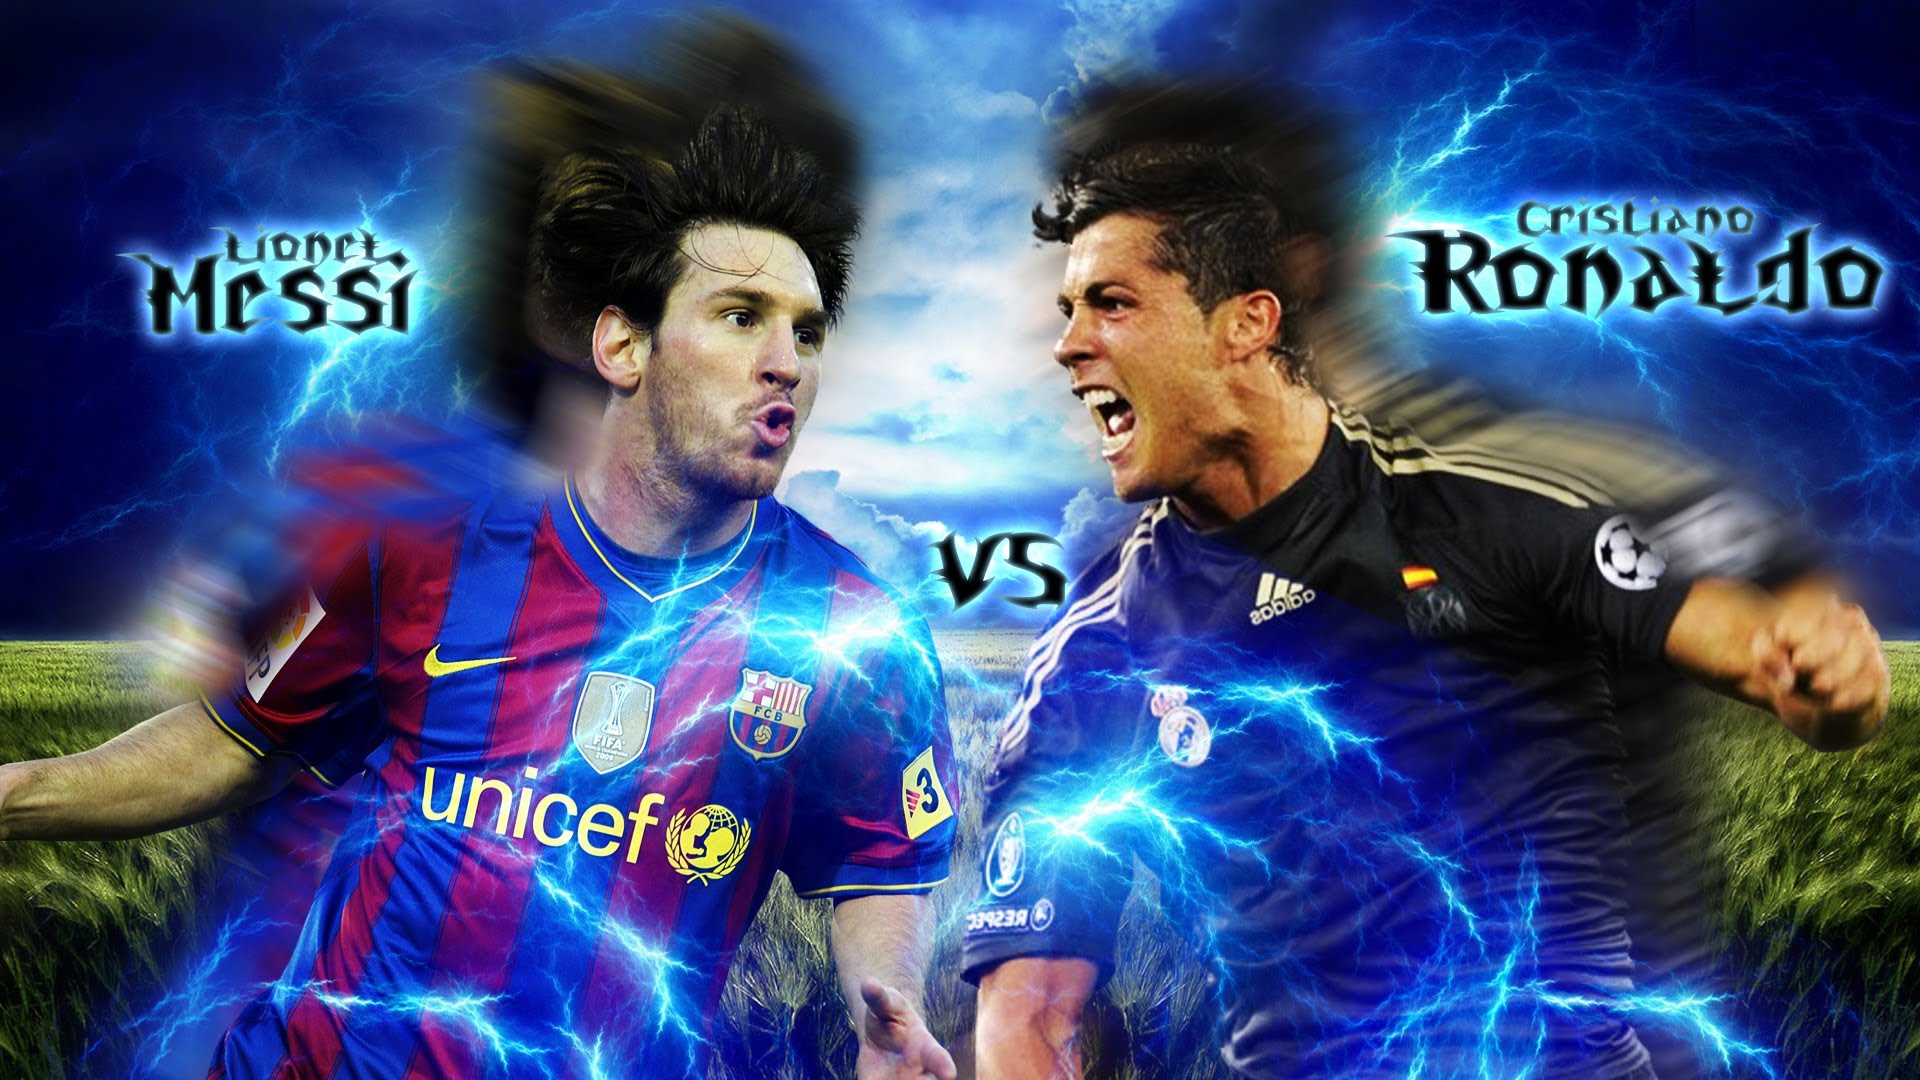 Free download Lionel Messi vs Cristiano Ronaldo wallpaper in Adobe